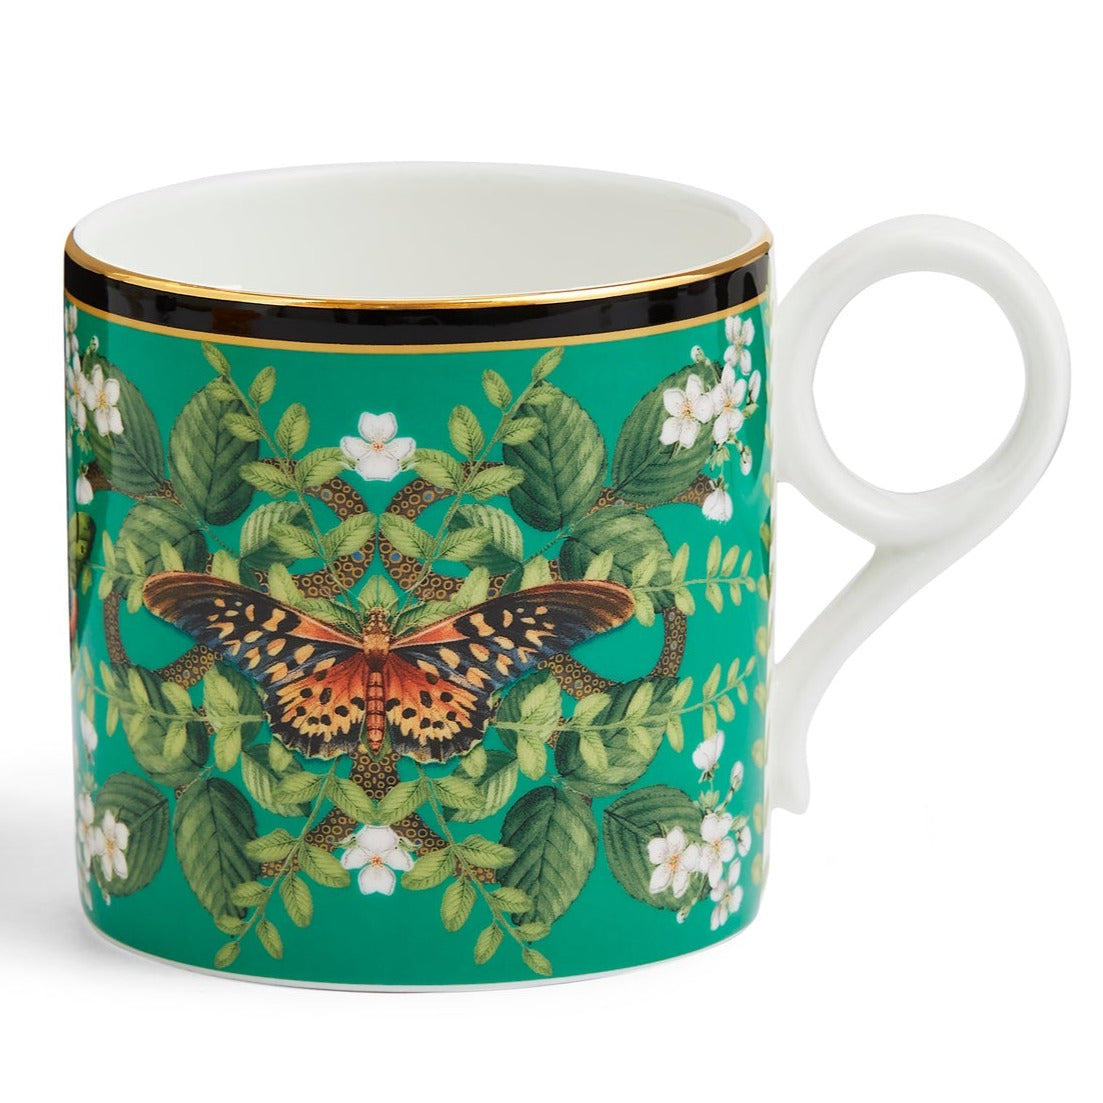 Wedgwood Wonderlust Emerald Forest Large Mug - Single mug in giftbox